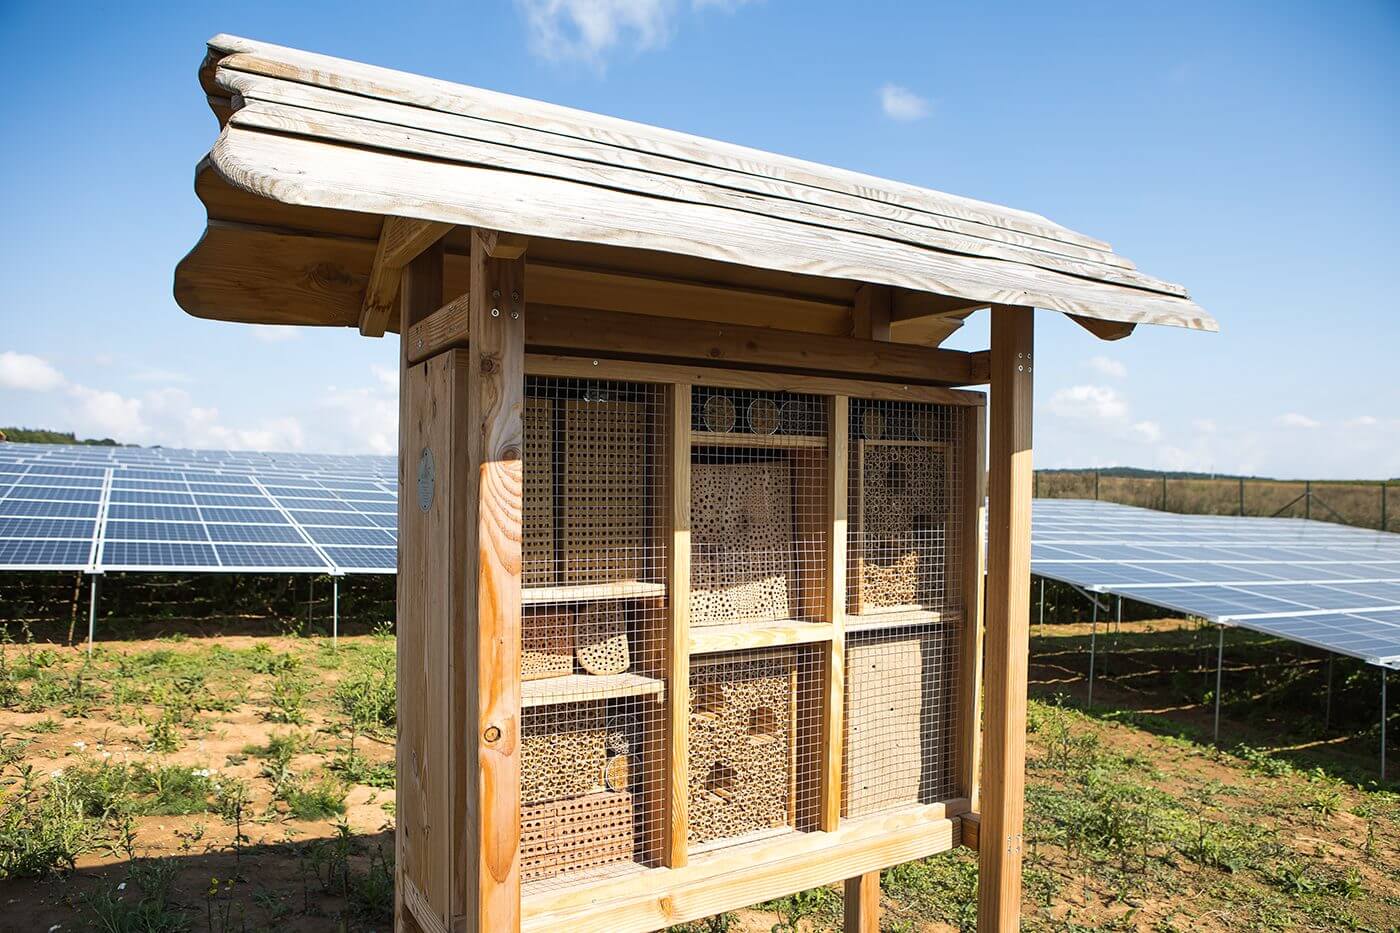 Zu sehen ist ein Insektenhotel auf einer 2021 in Betrieb genommenen Solaranlage in Rottendorf, Bayern.